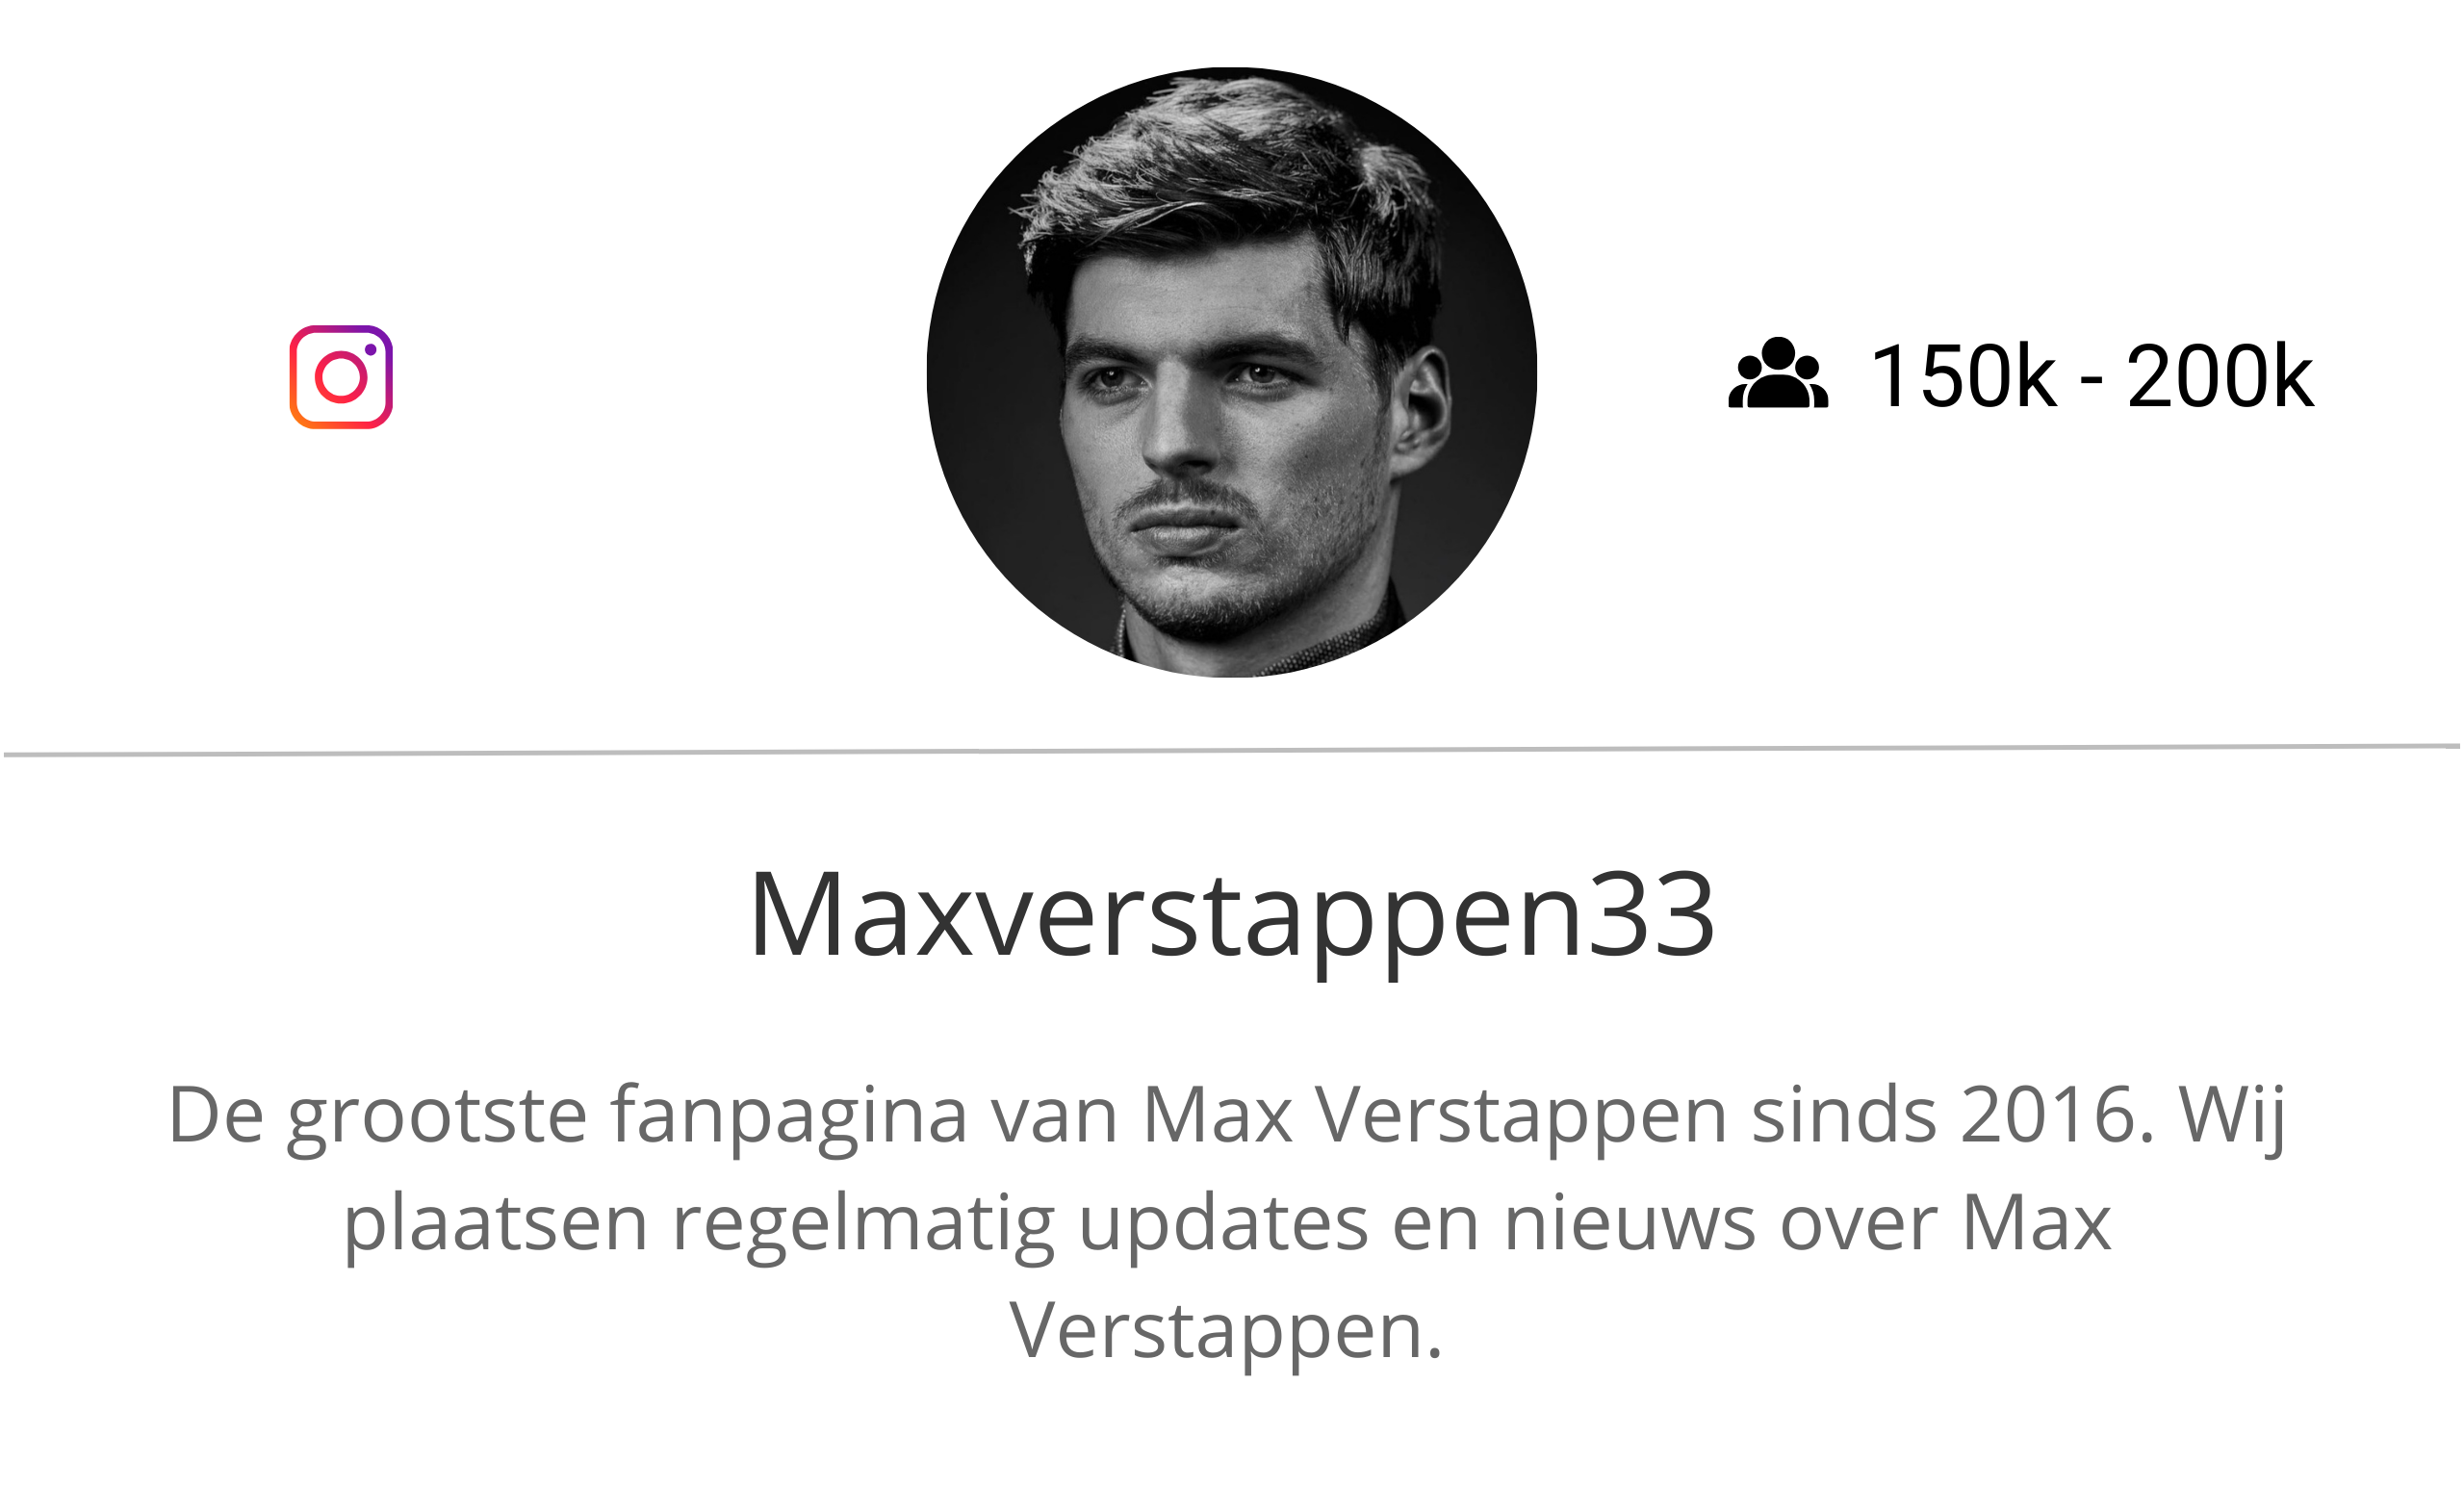 Maxverstappen 33 fanpagina